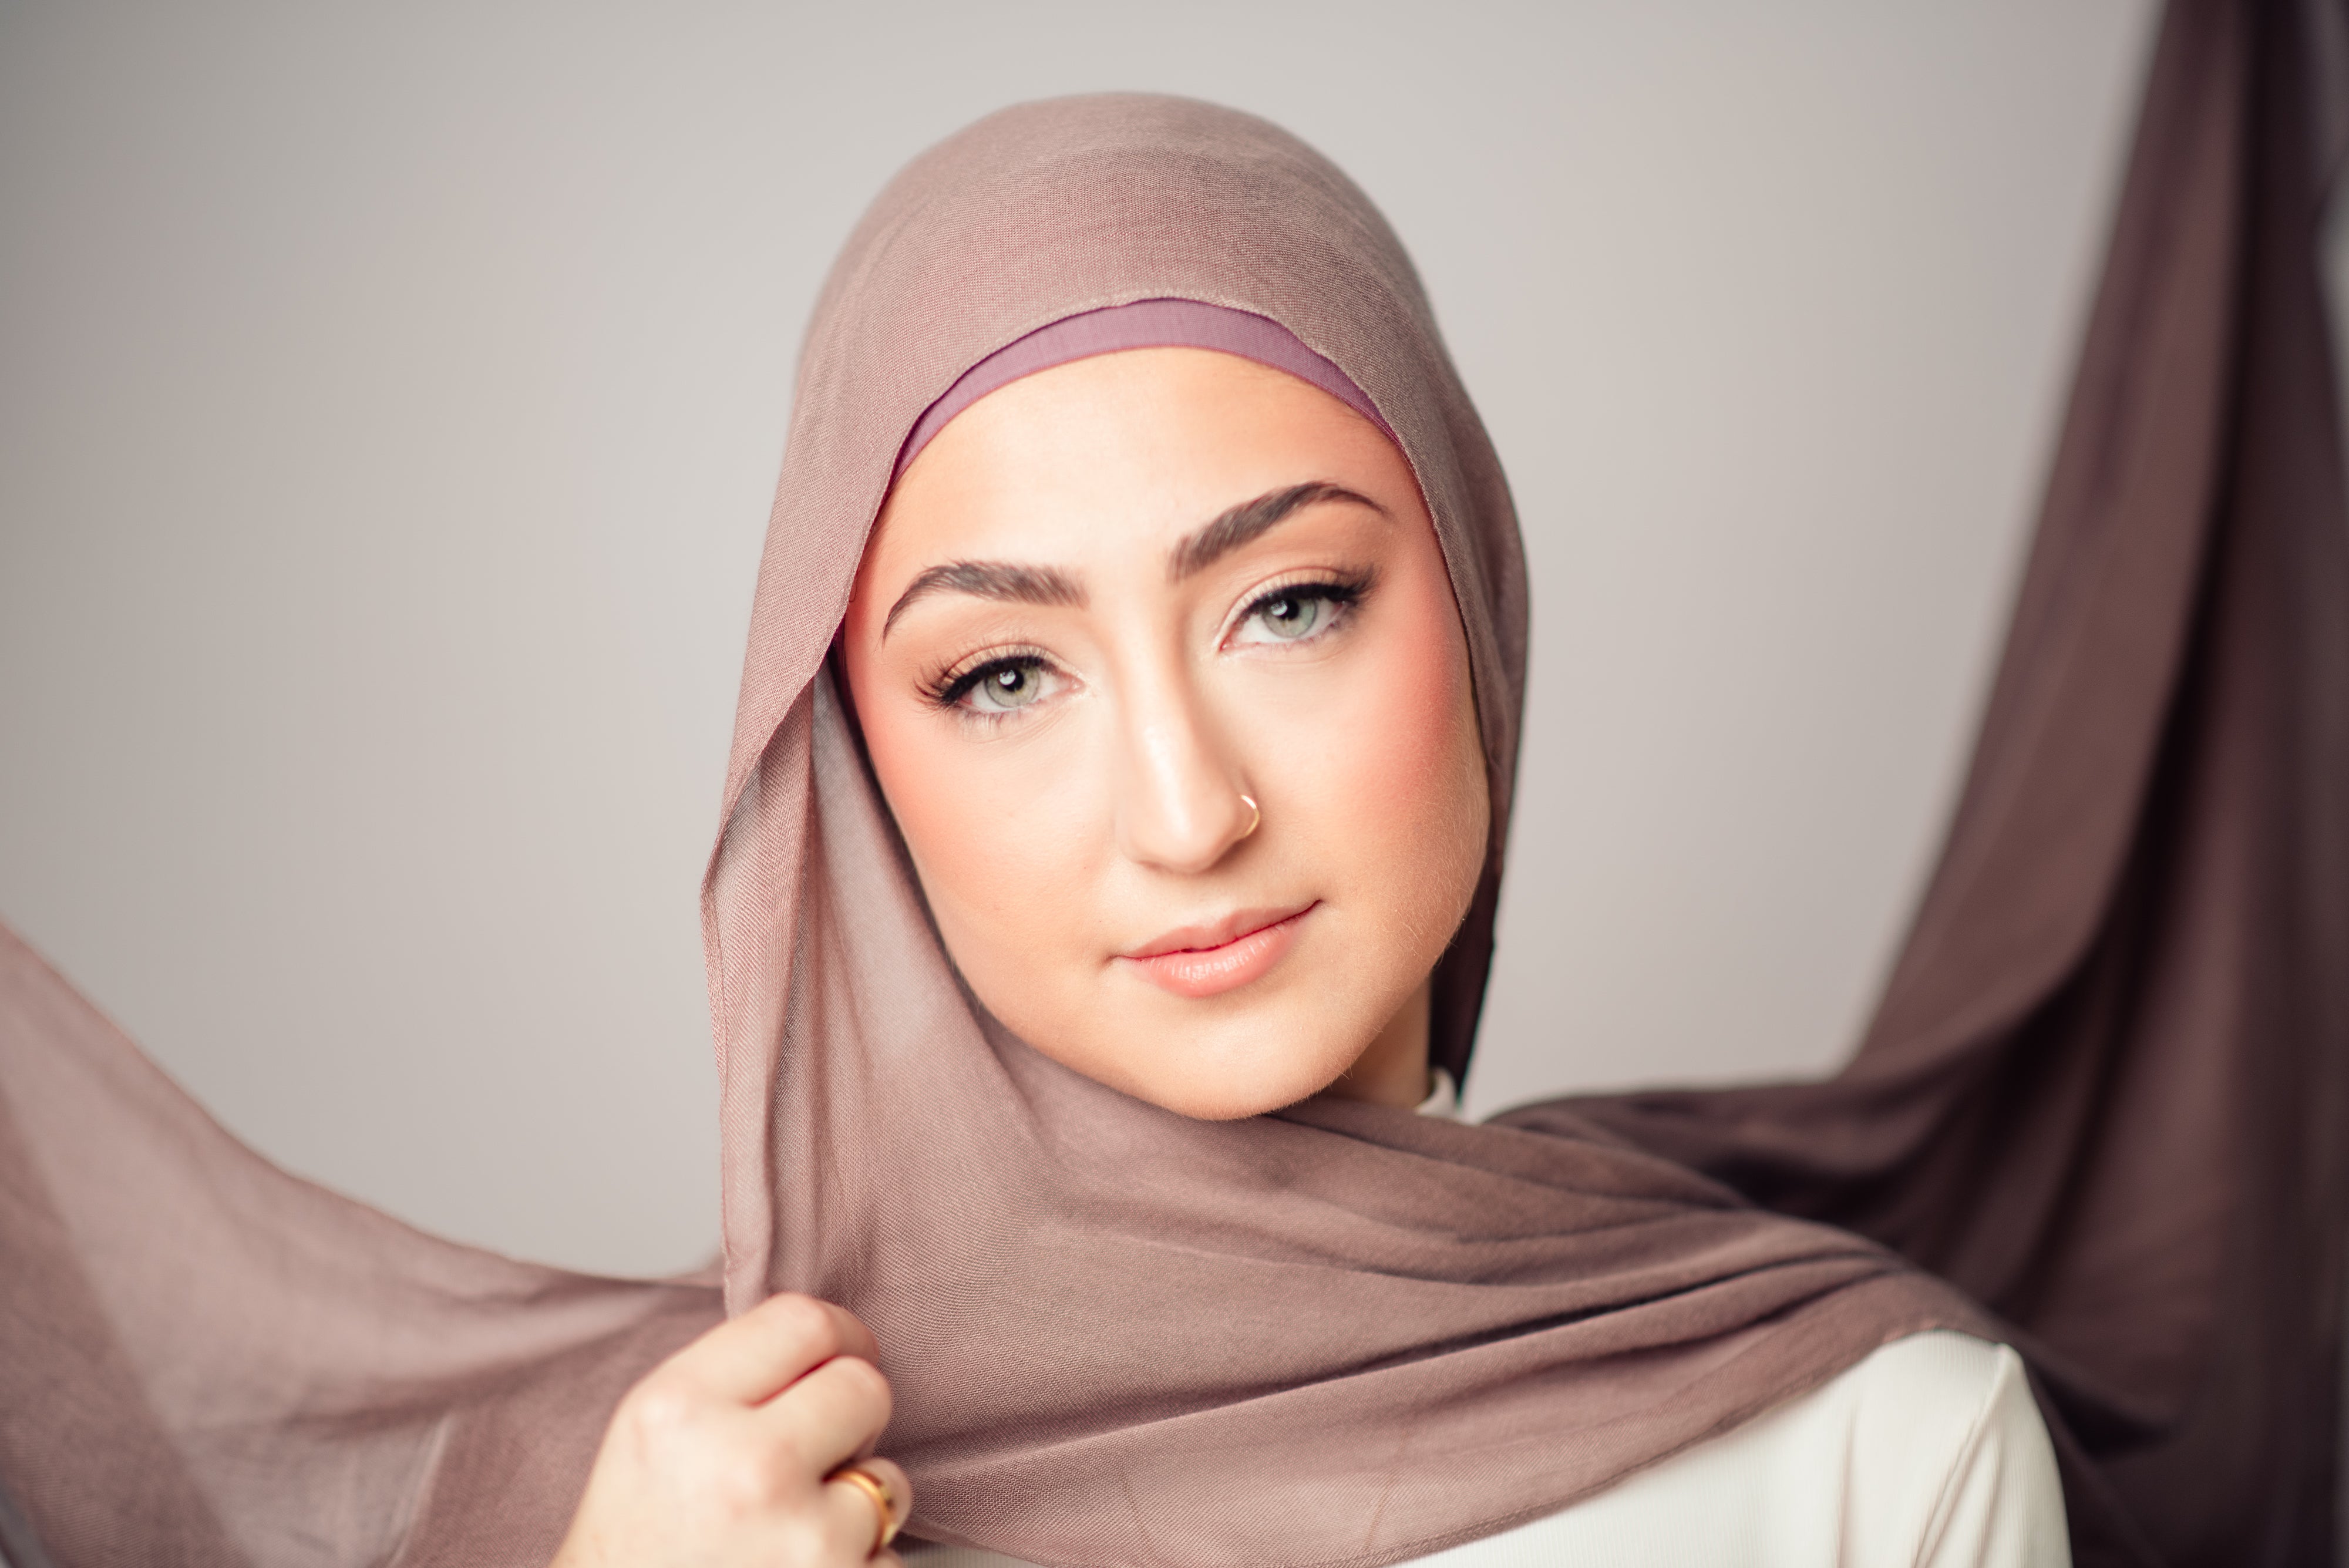 bamboo modal hijabs - LuxHijabs